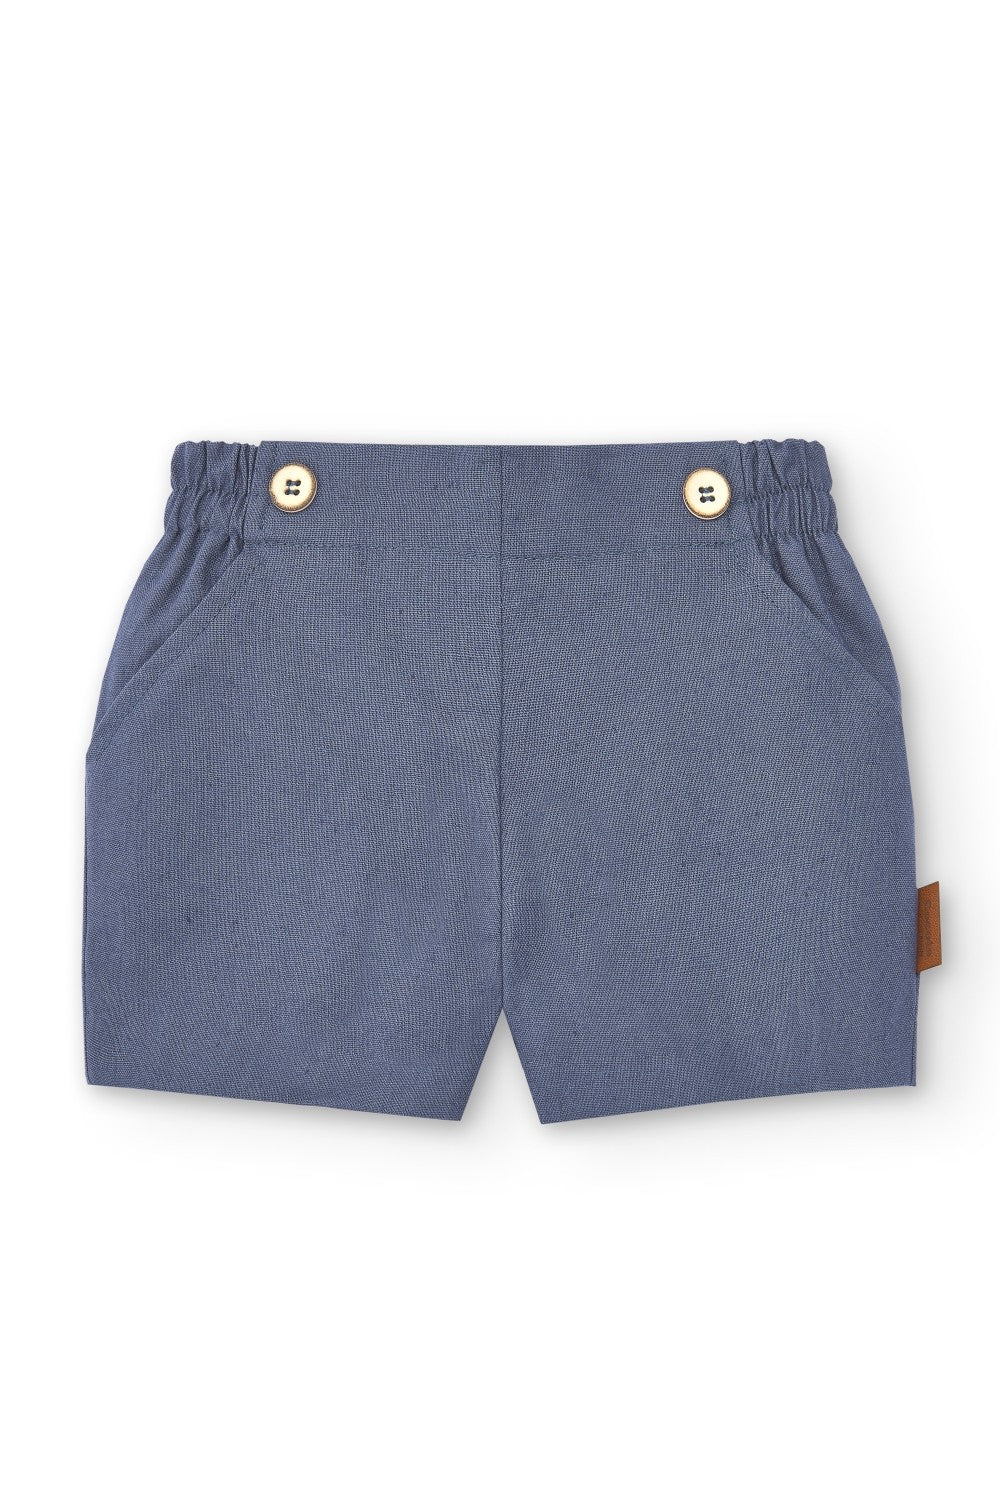 Pantalón de niño azul Cocote & Charanga VERANO/Outlet